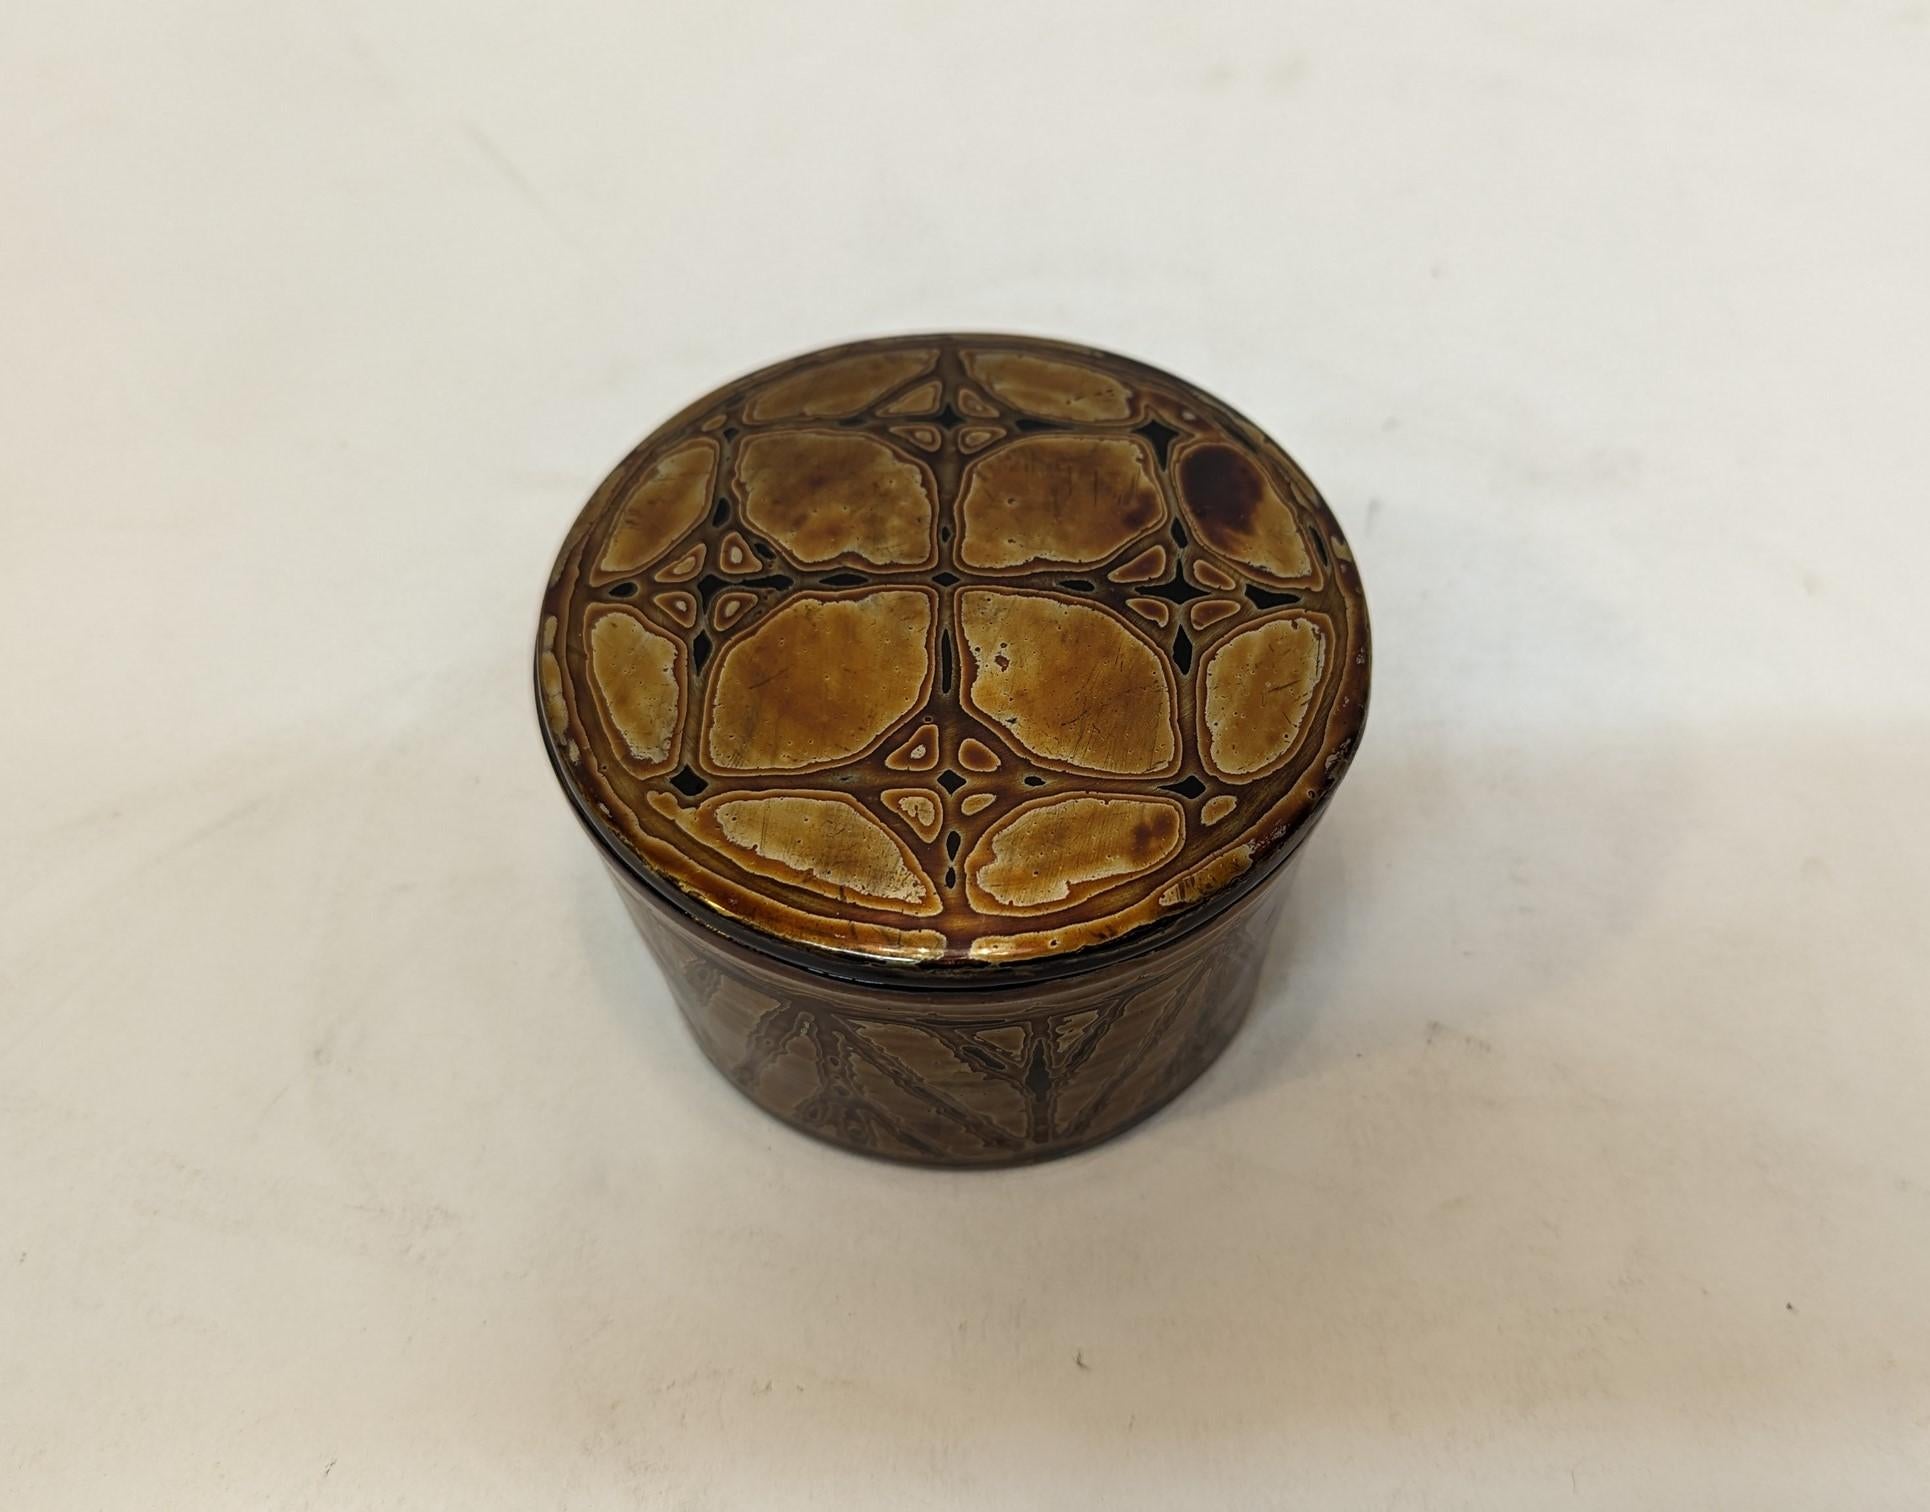 Birmanische Lackdose.  Runde birmanische Vintage-Lackdose. 
Spezielle Lackiertechnik, um die Farbe und das Design auf diesem Lackstück herzustellen. Im Gegensatz zu den meisten birmanischen Lackwaren ist dies kein geätztes Design. Das Design wird